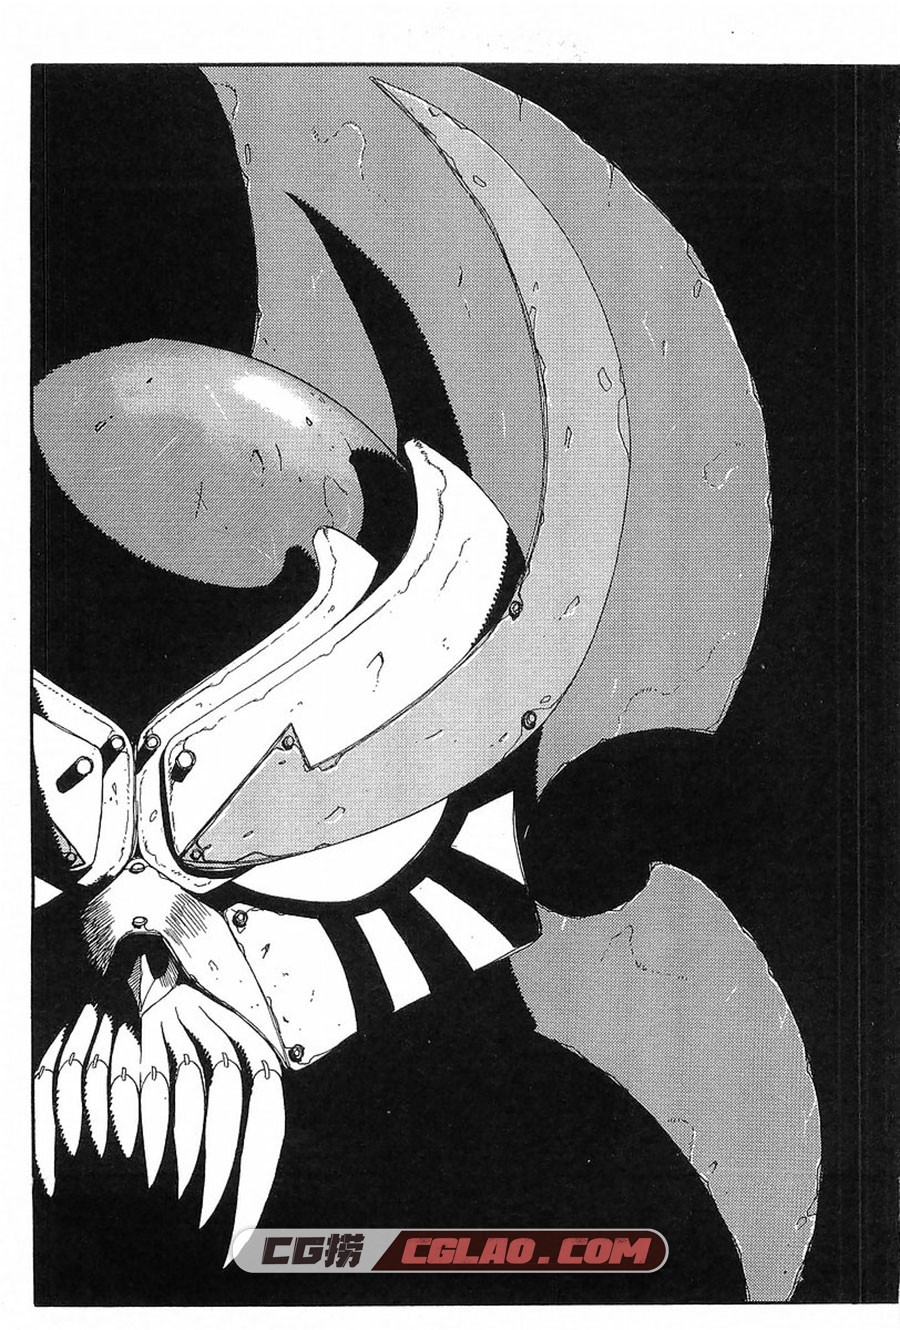 钢HAGANE 神崎将臣 1-16卷 漫画完结全集下载 百度网盘,01_0008.jpg